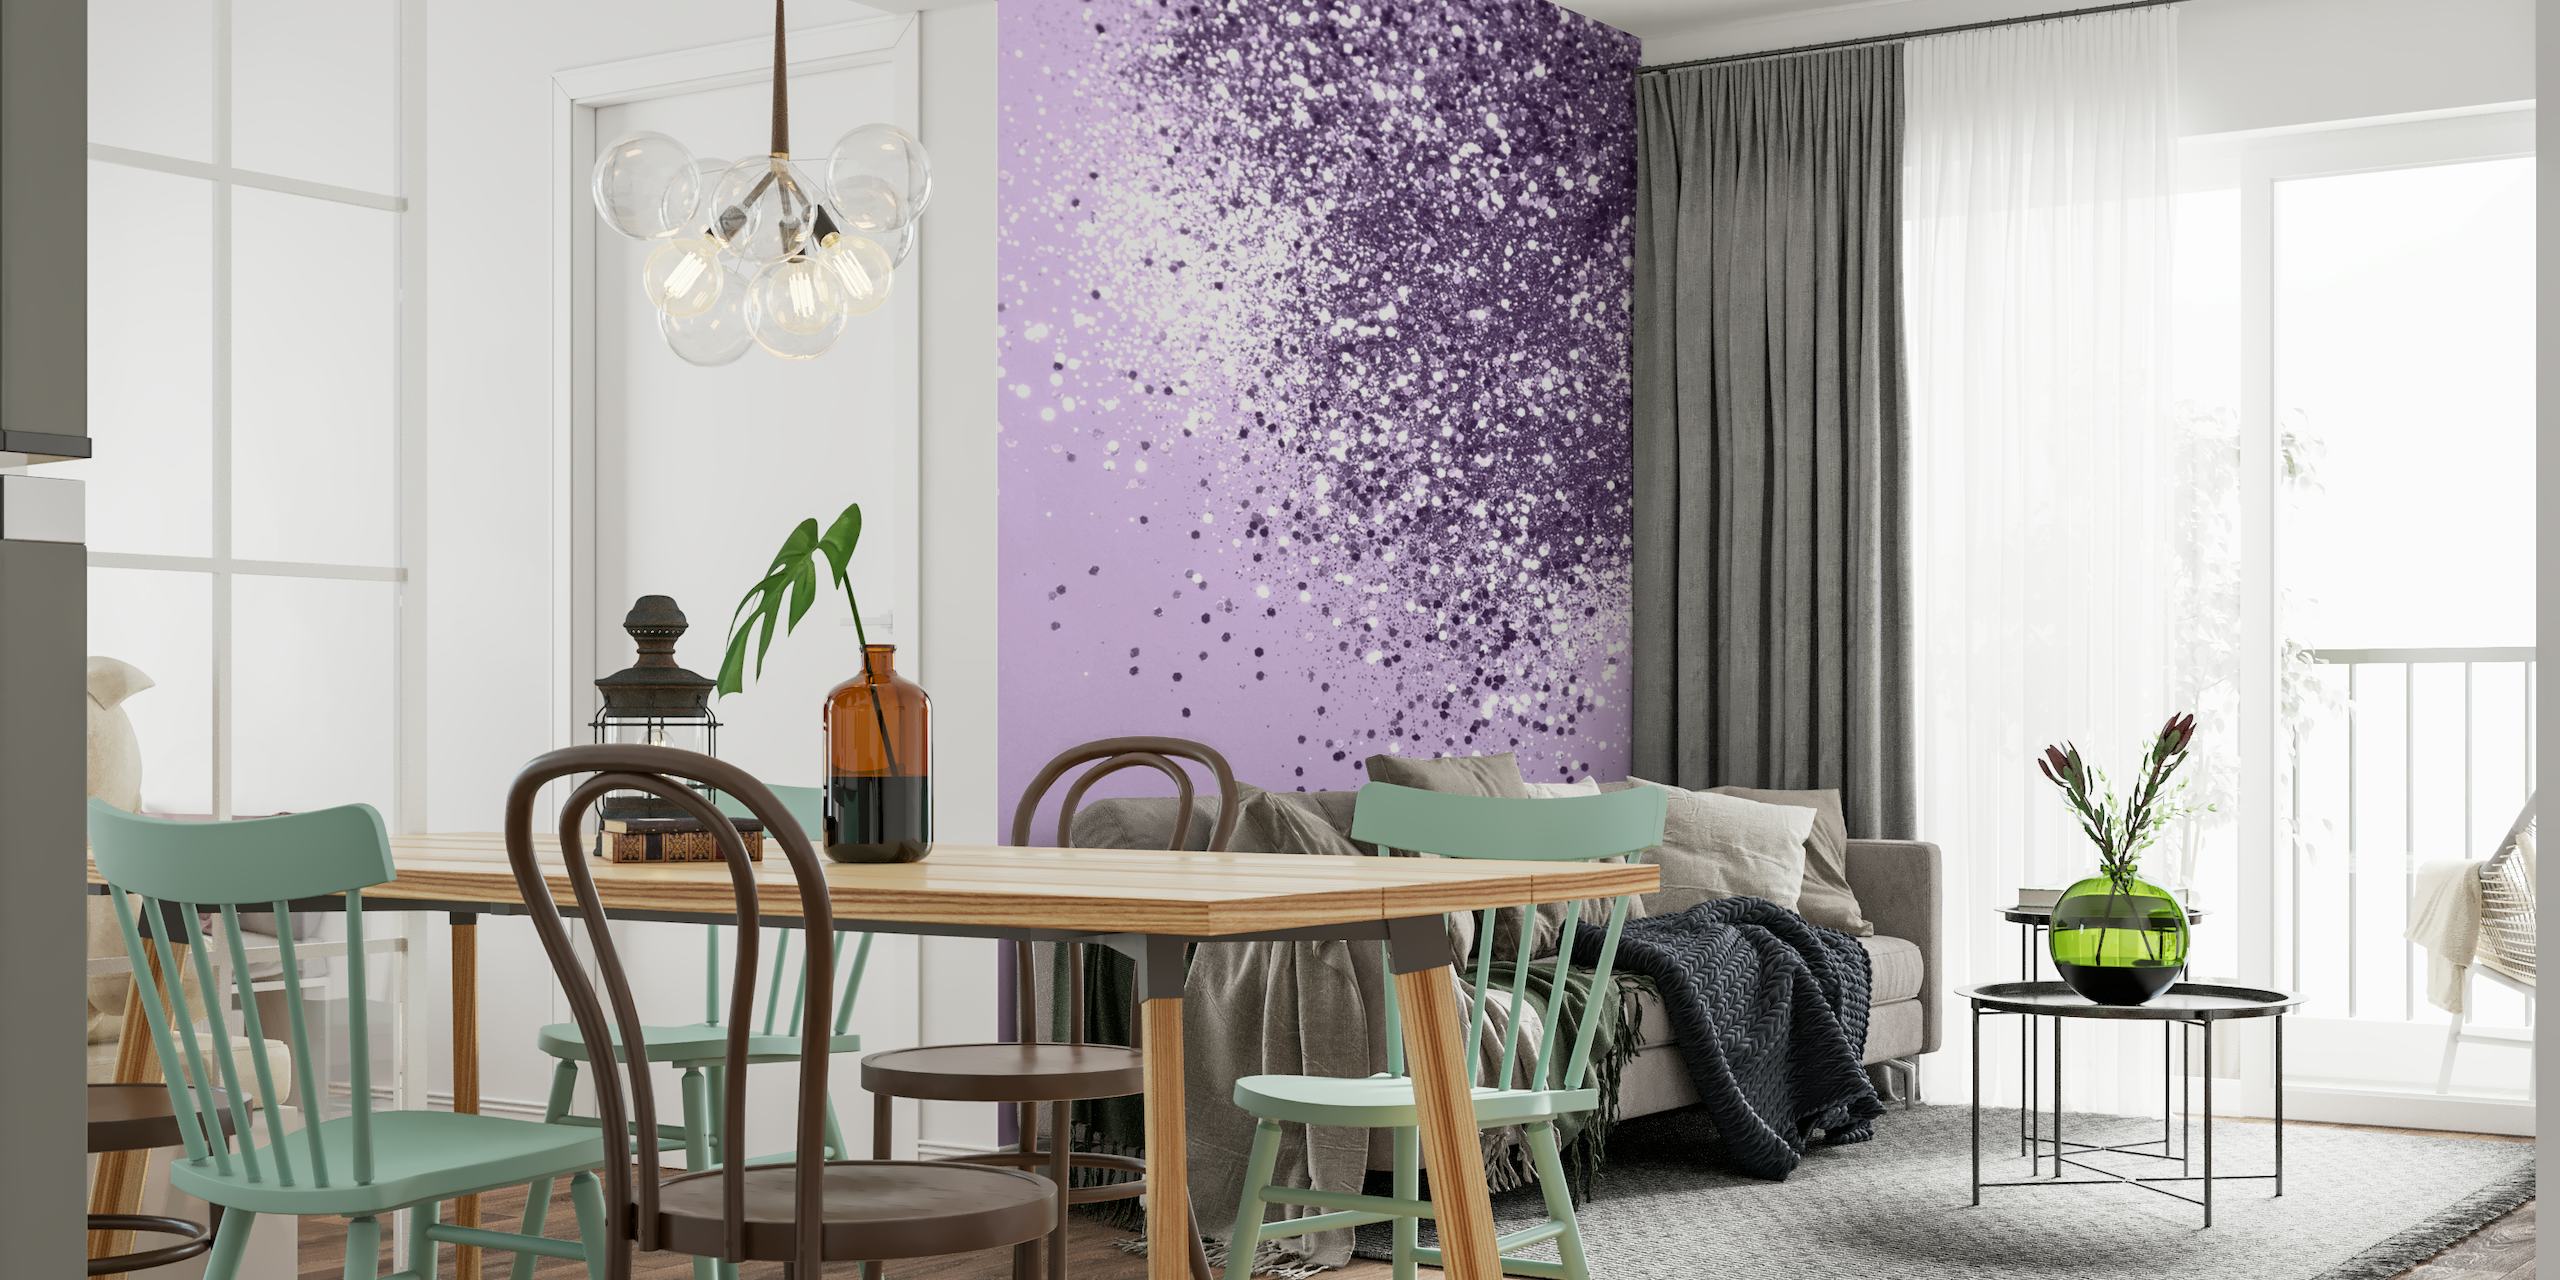 Säkenöivä pehmeä laventelin kimalteleva seinämaalaus luo rauhallisen ja elegantin tunnelman